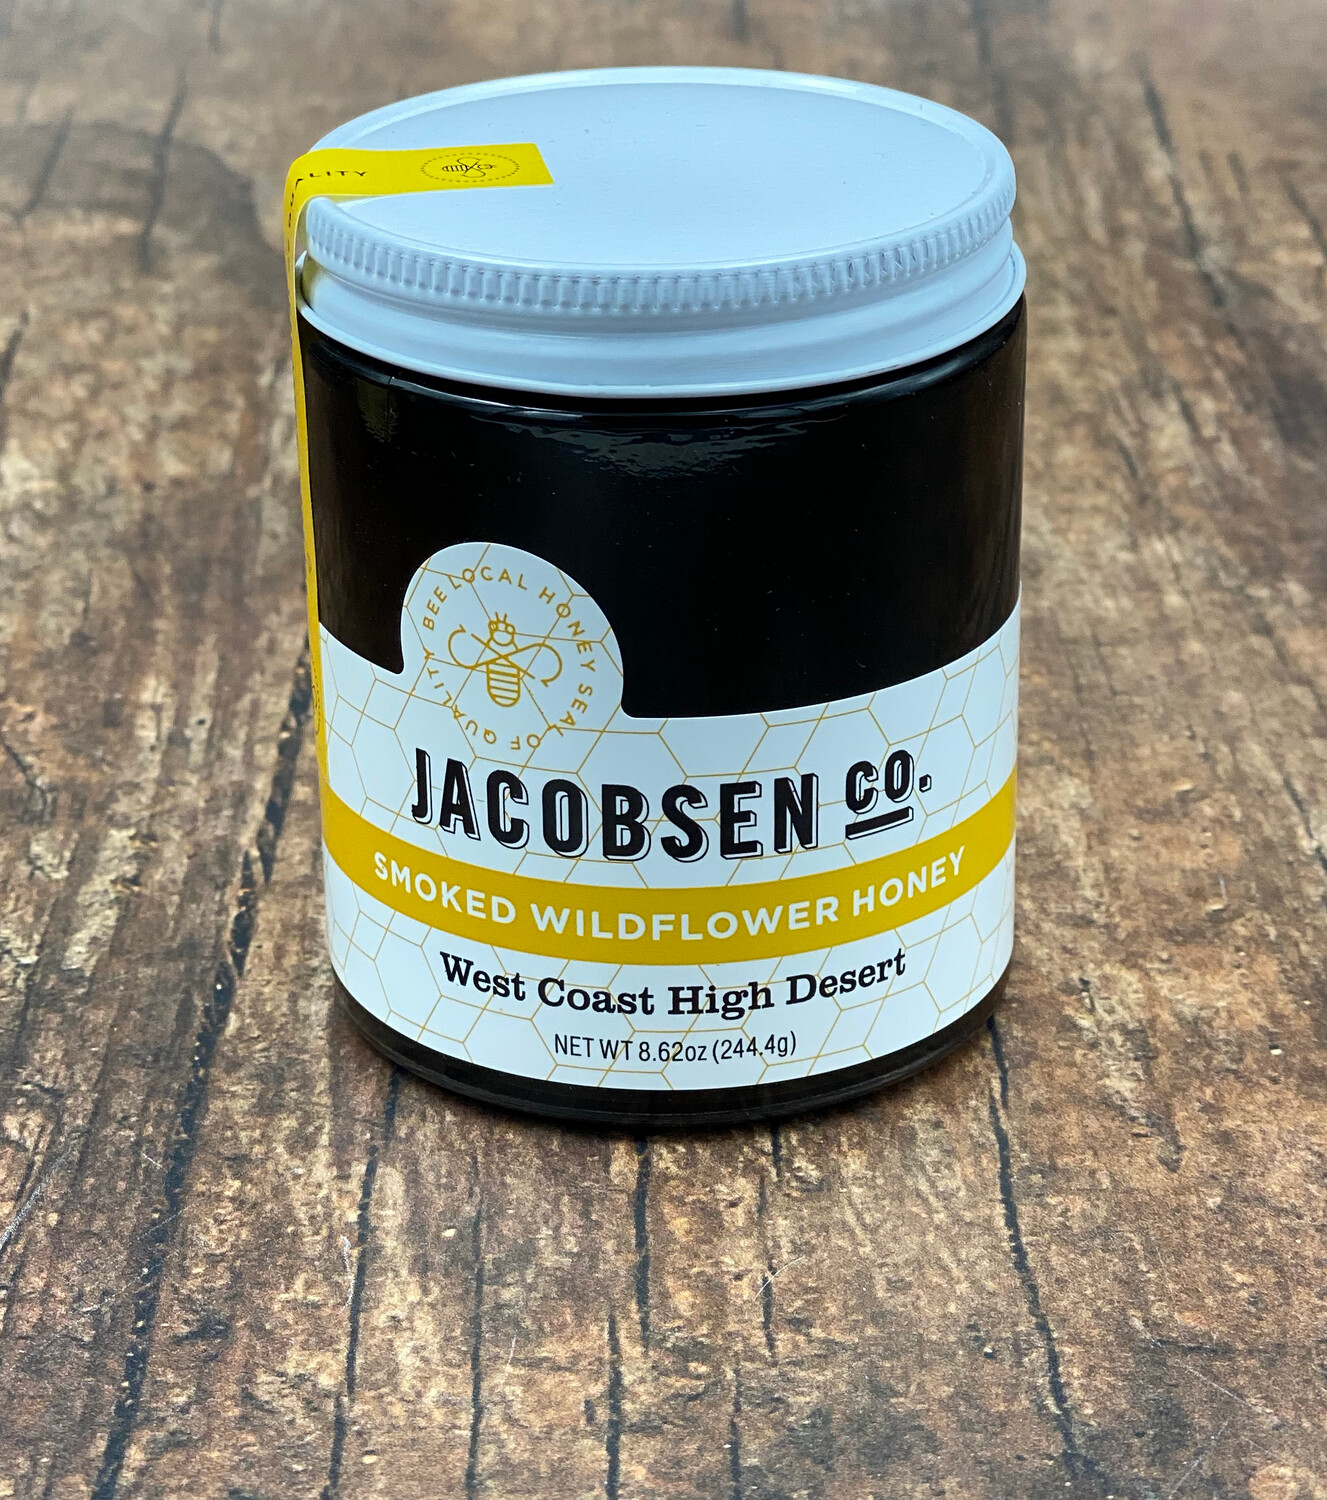 Jacobsen - Smoked Wildflower Honey